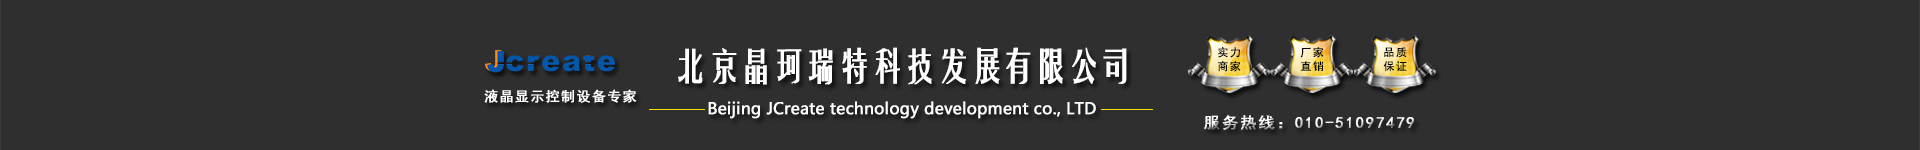 北京晶珂瑞特科技发展有限公司